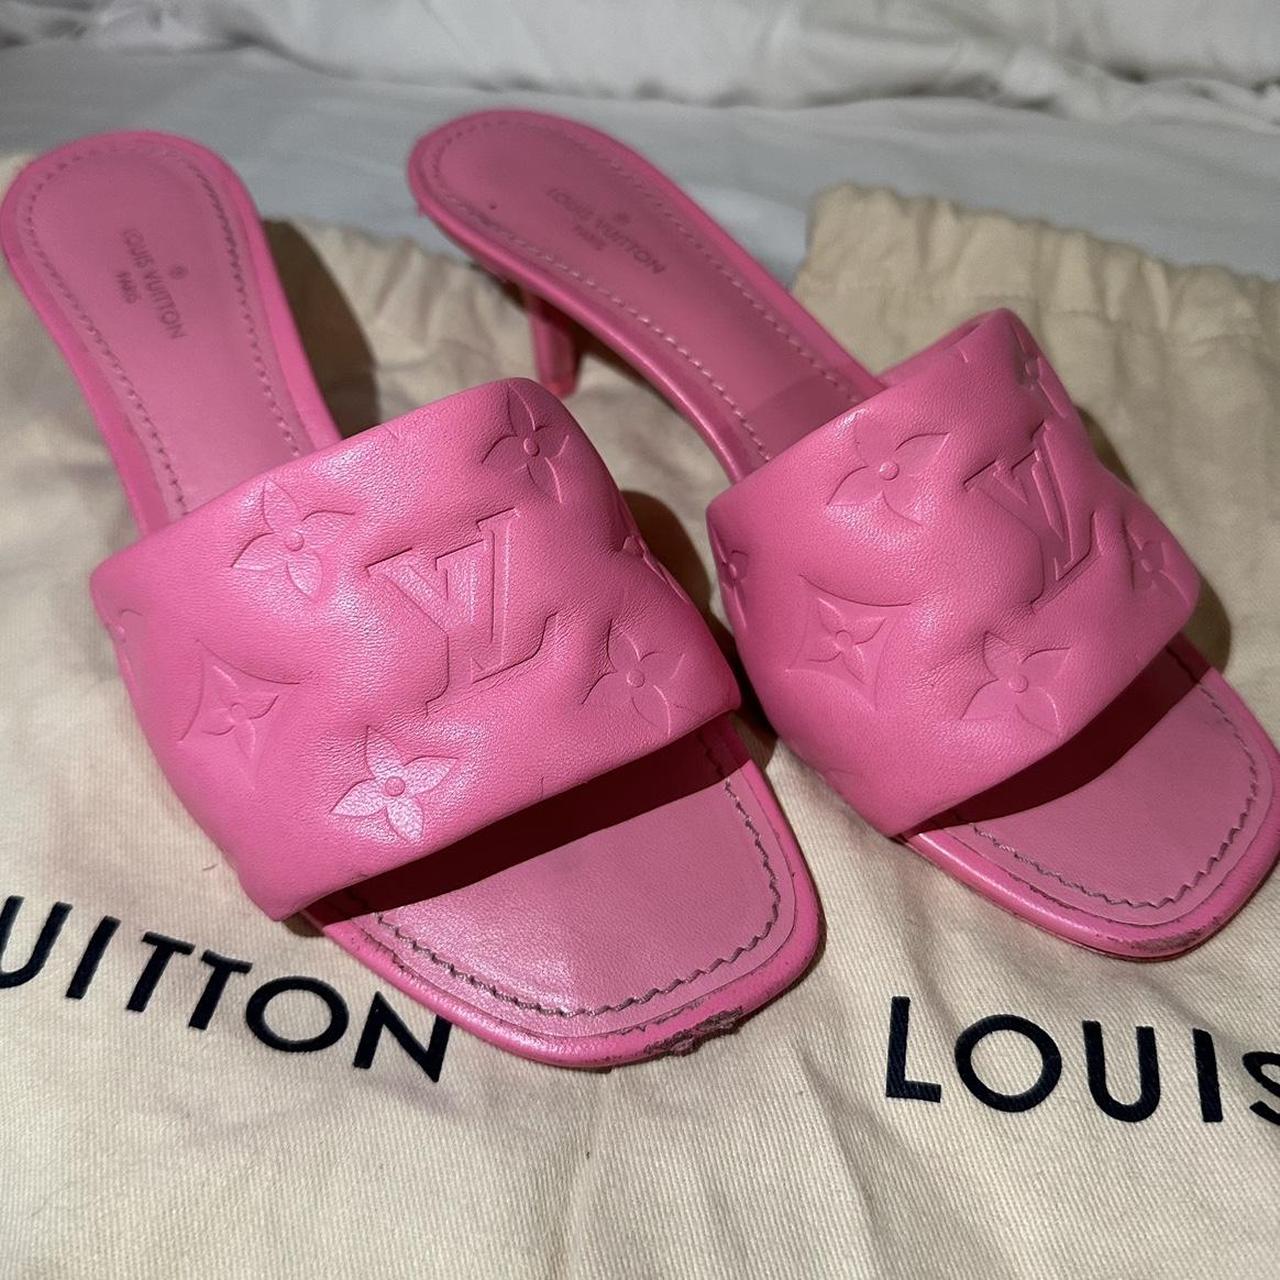 Louis Vuitton revival mule 👛 size women's - Depop